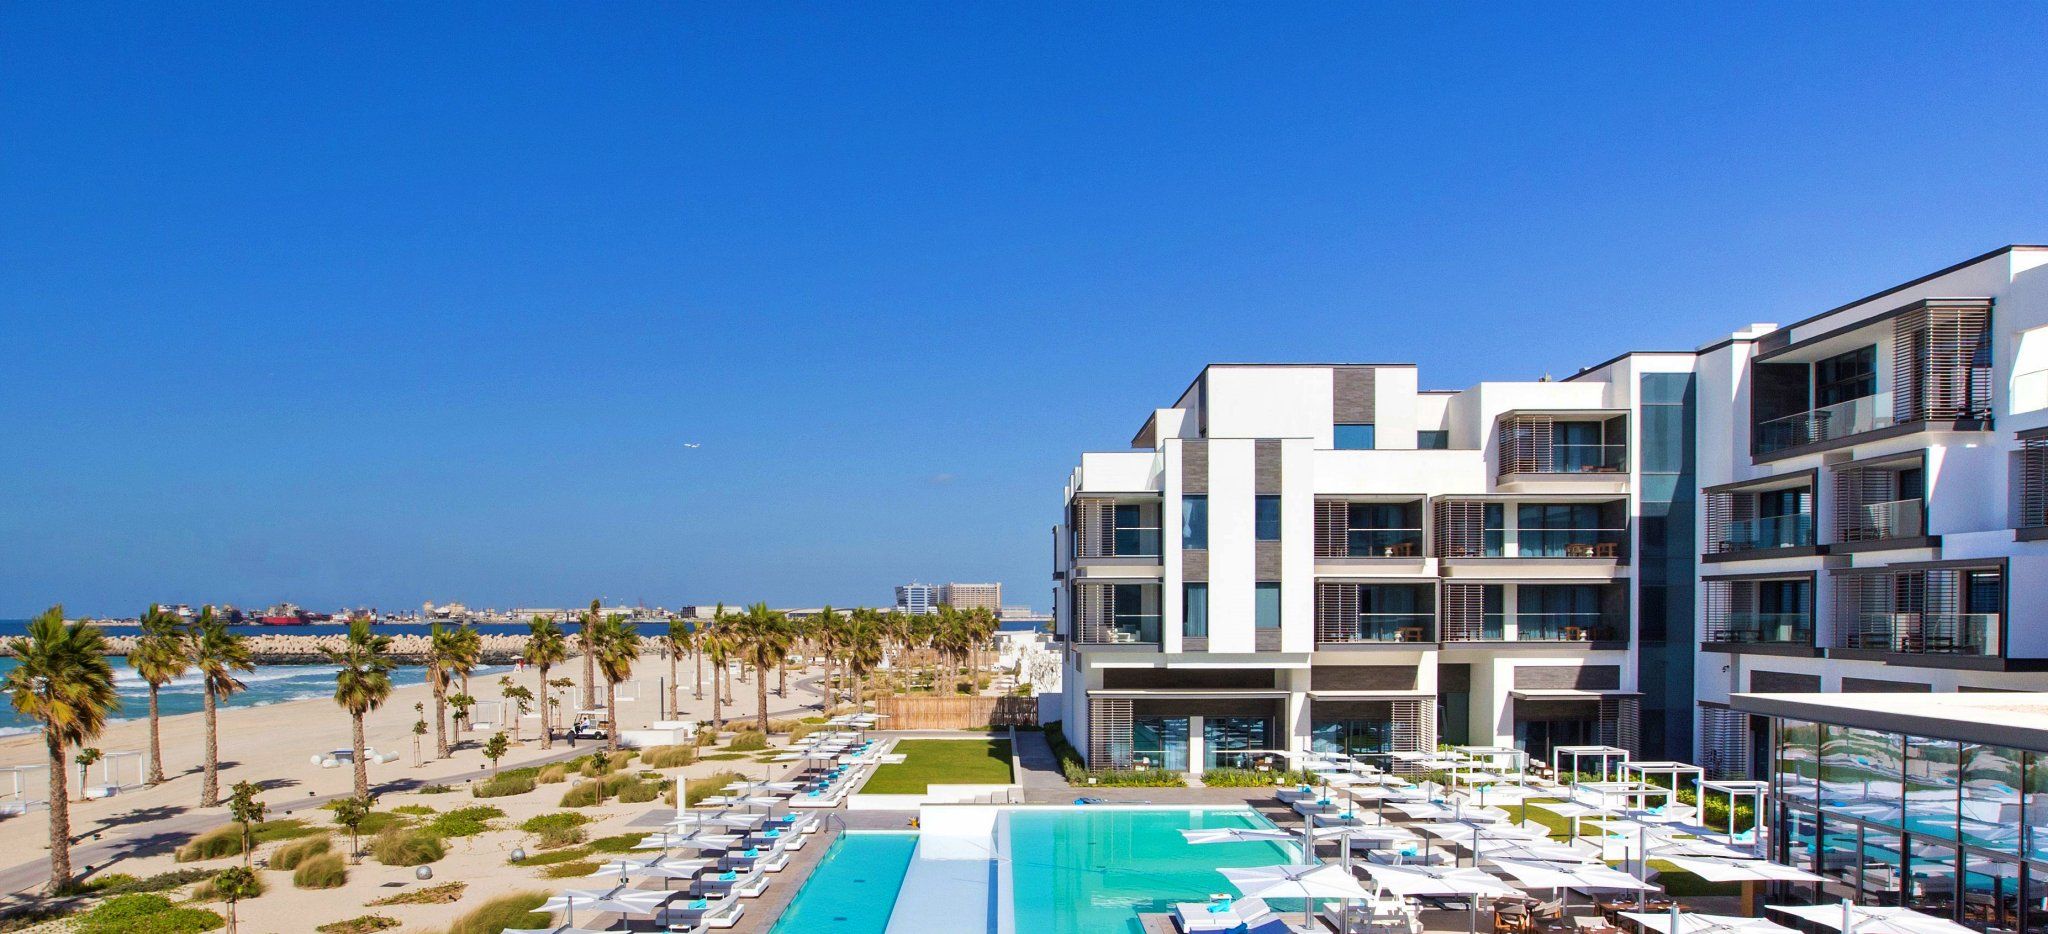 Das Hauptgebäude des Hotels "Nikki Beach Dubai" direkt am Strand